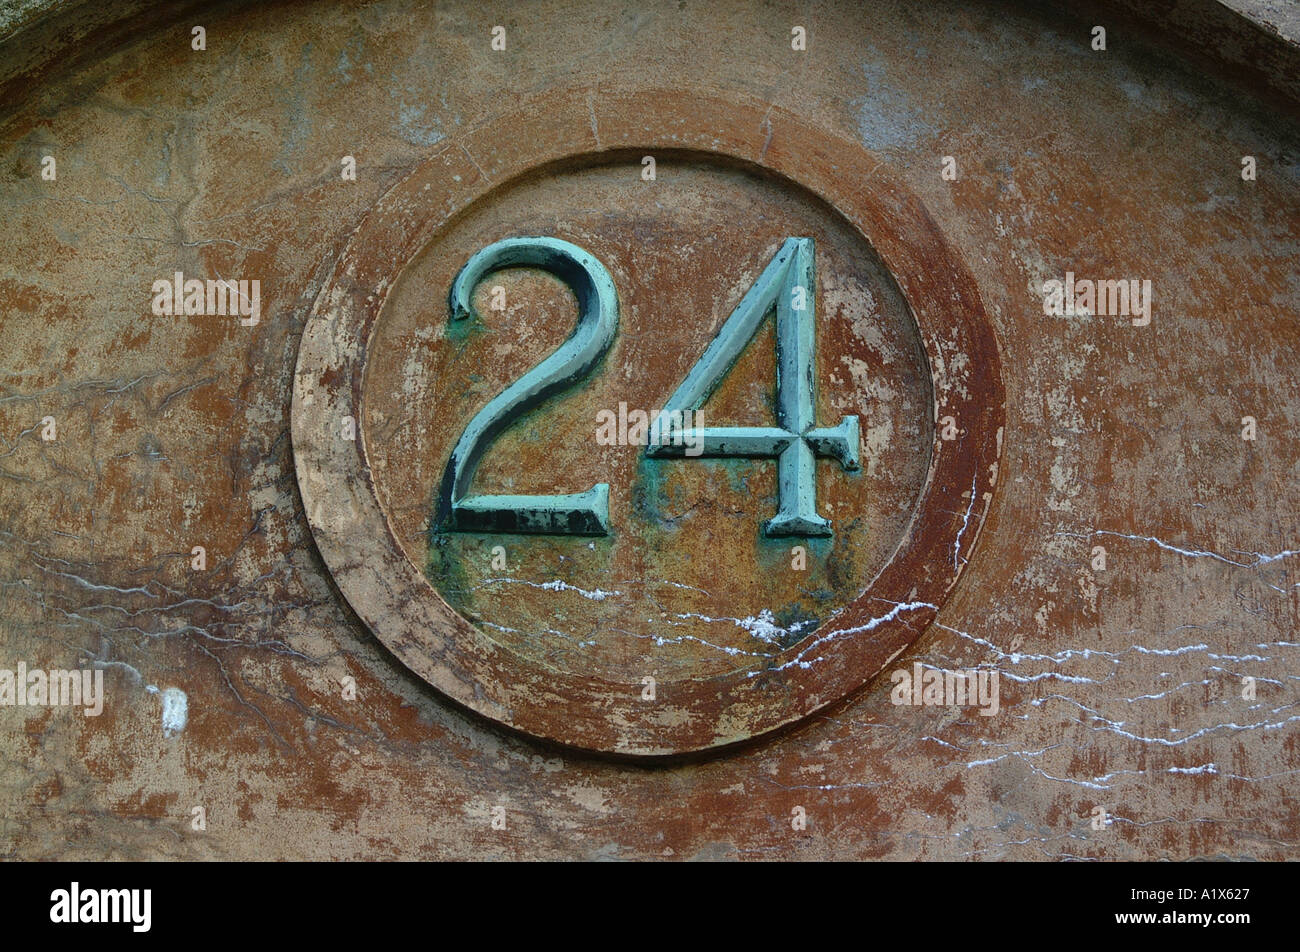 Die Nummer 24 auf eine Rissbildung Wand Gebäude 2 4 24 Stunden eines Tages ein Tag 1 zahlen Zeit Kalender Uhr Konzept Stockfoto